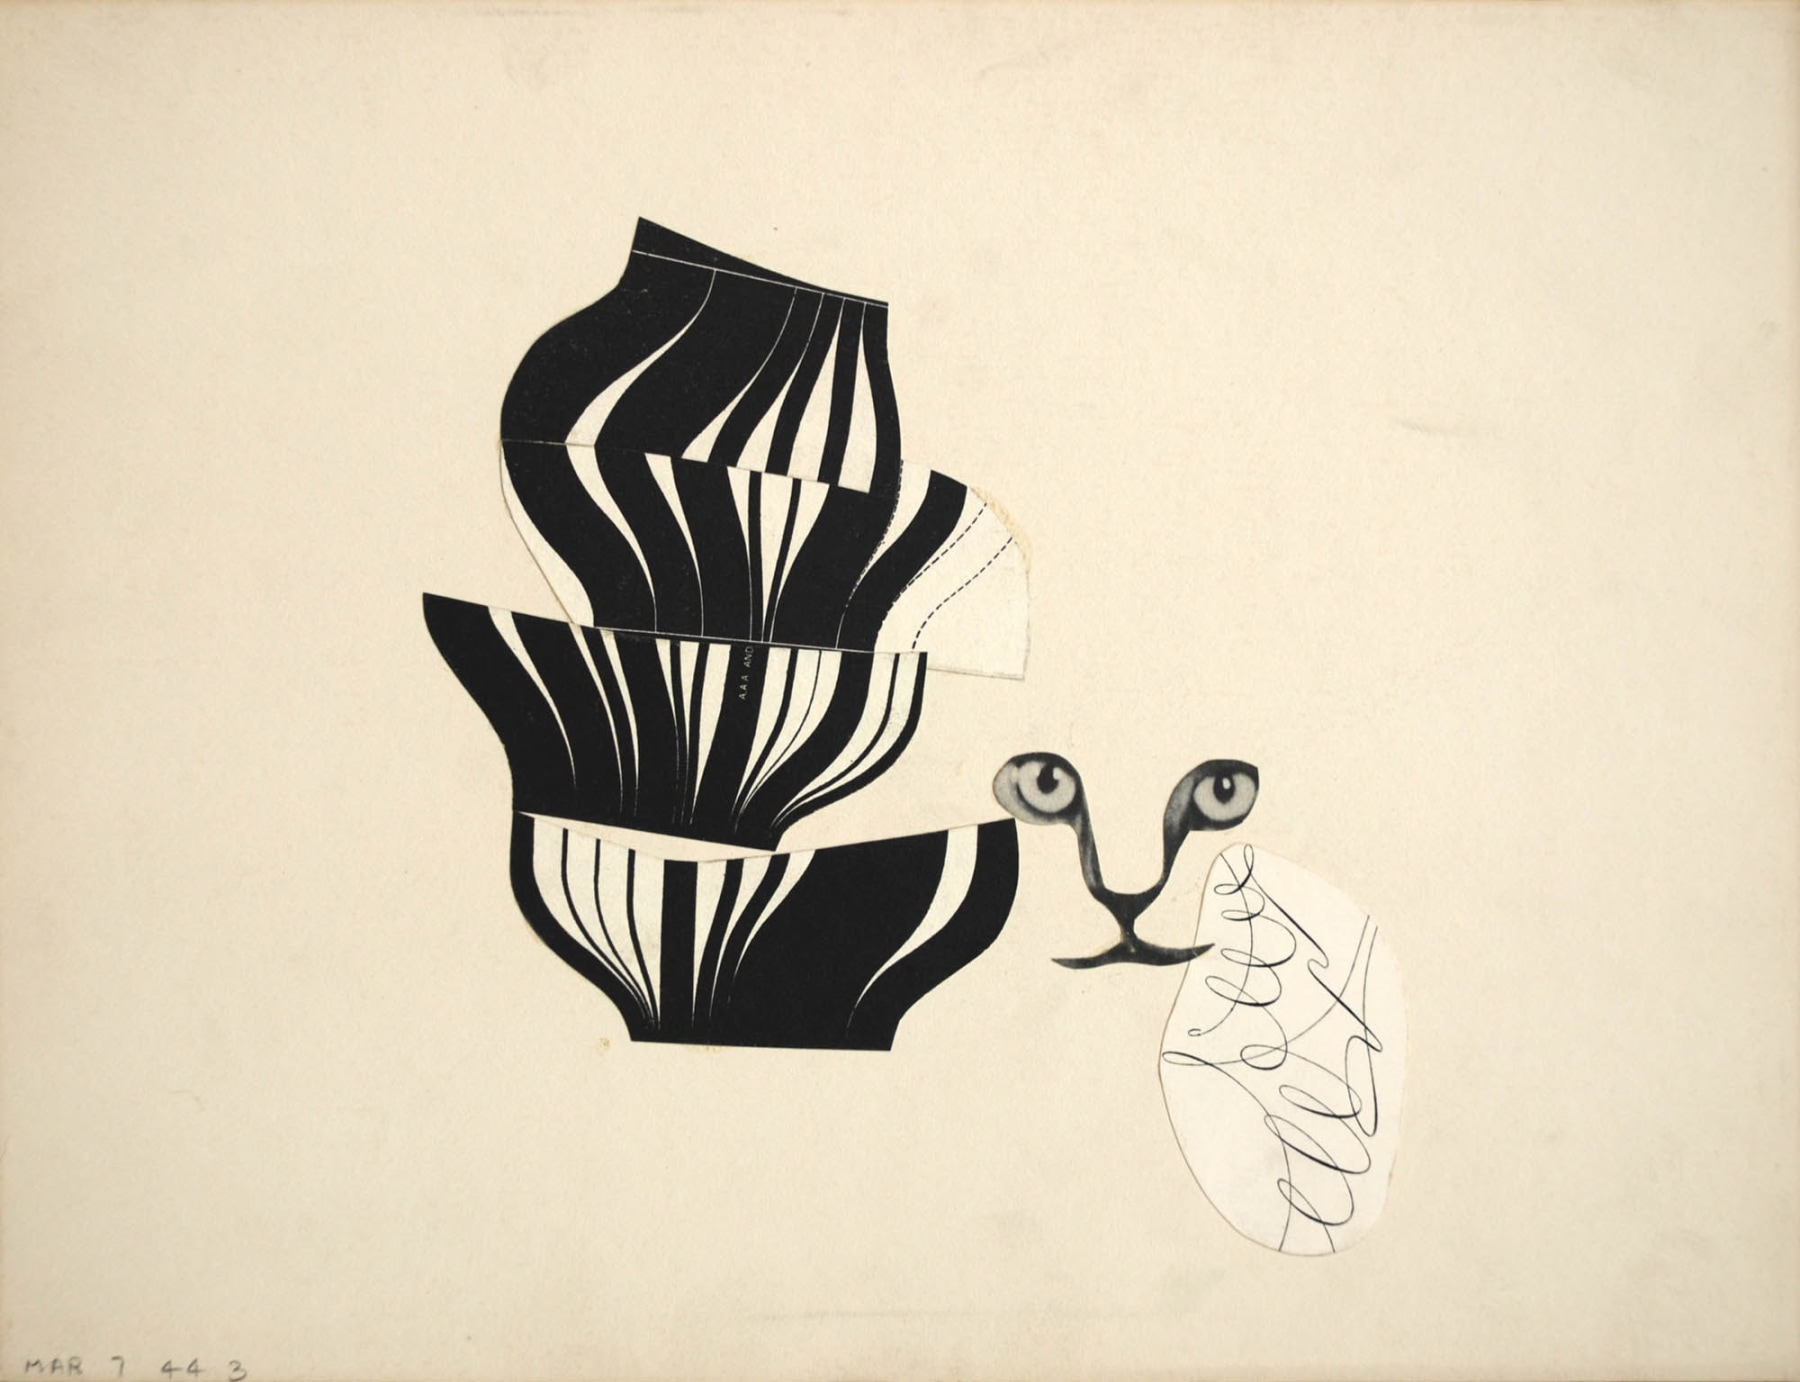 Sidney Gordin (1918-1996), Constructivist Collage #3, March 7, 1944